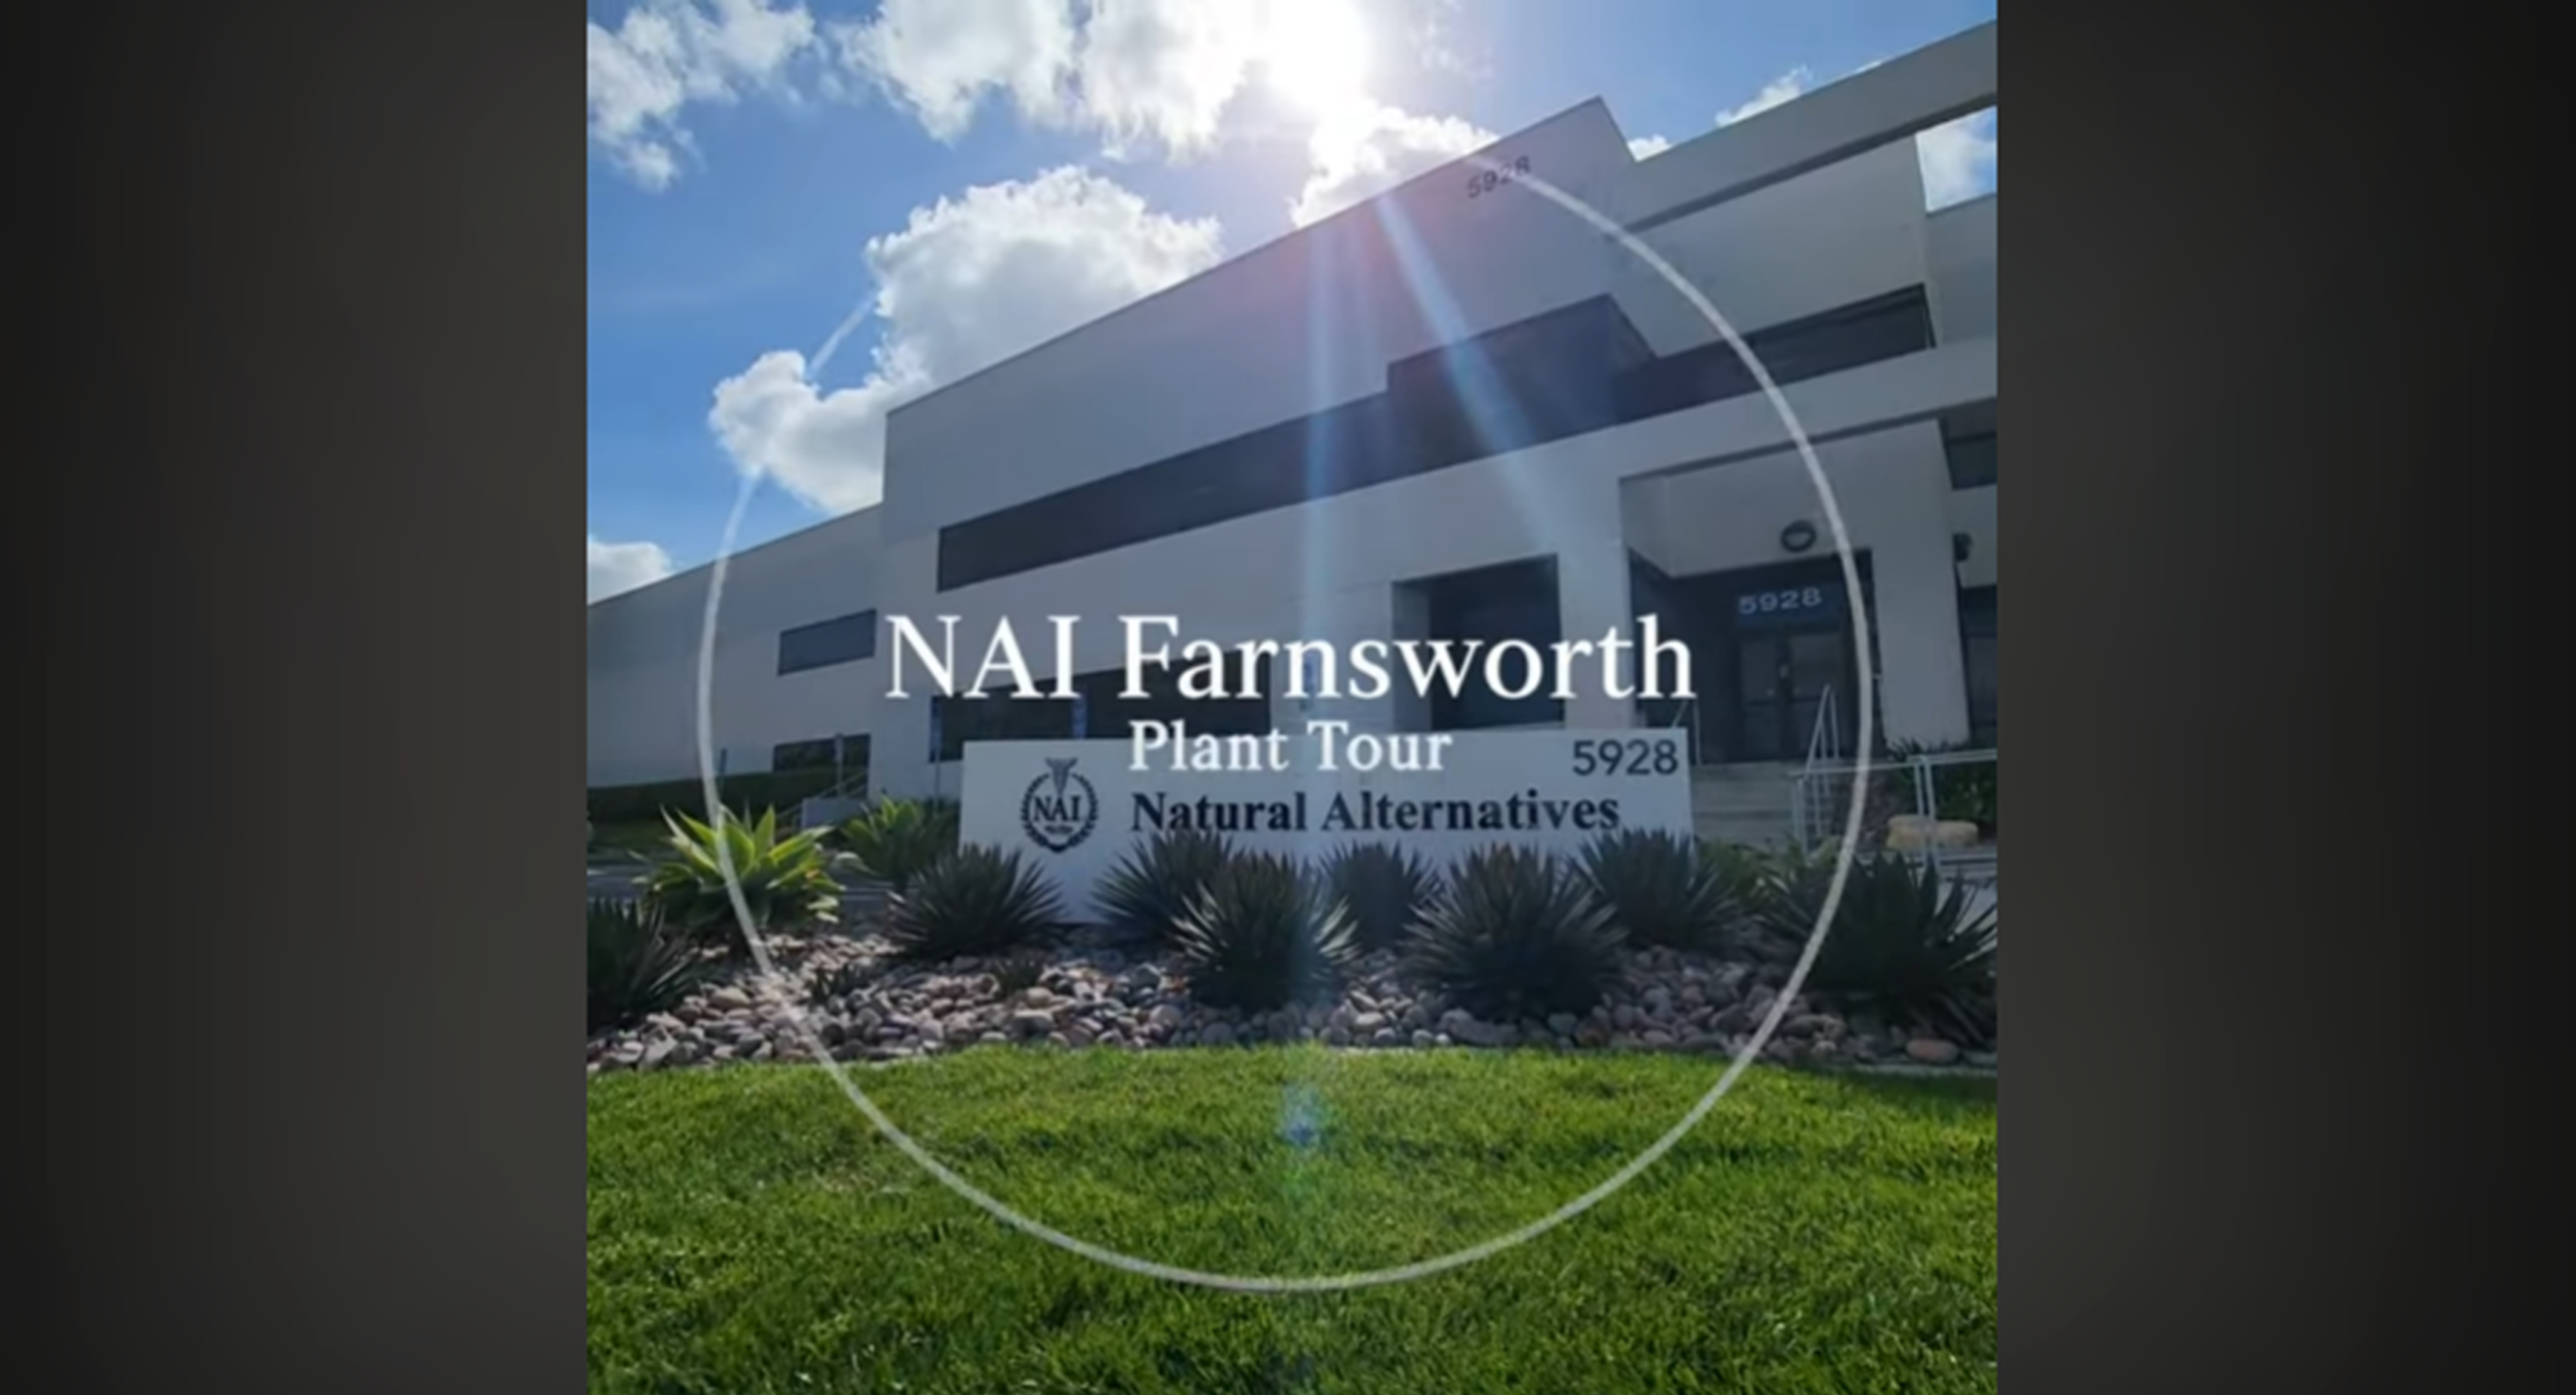 NAI Farnsworth Plant Tour